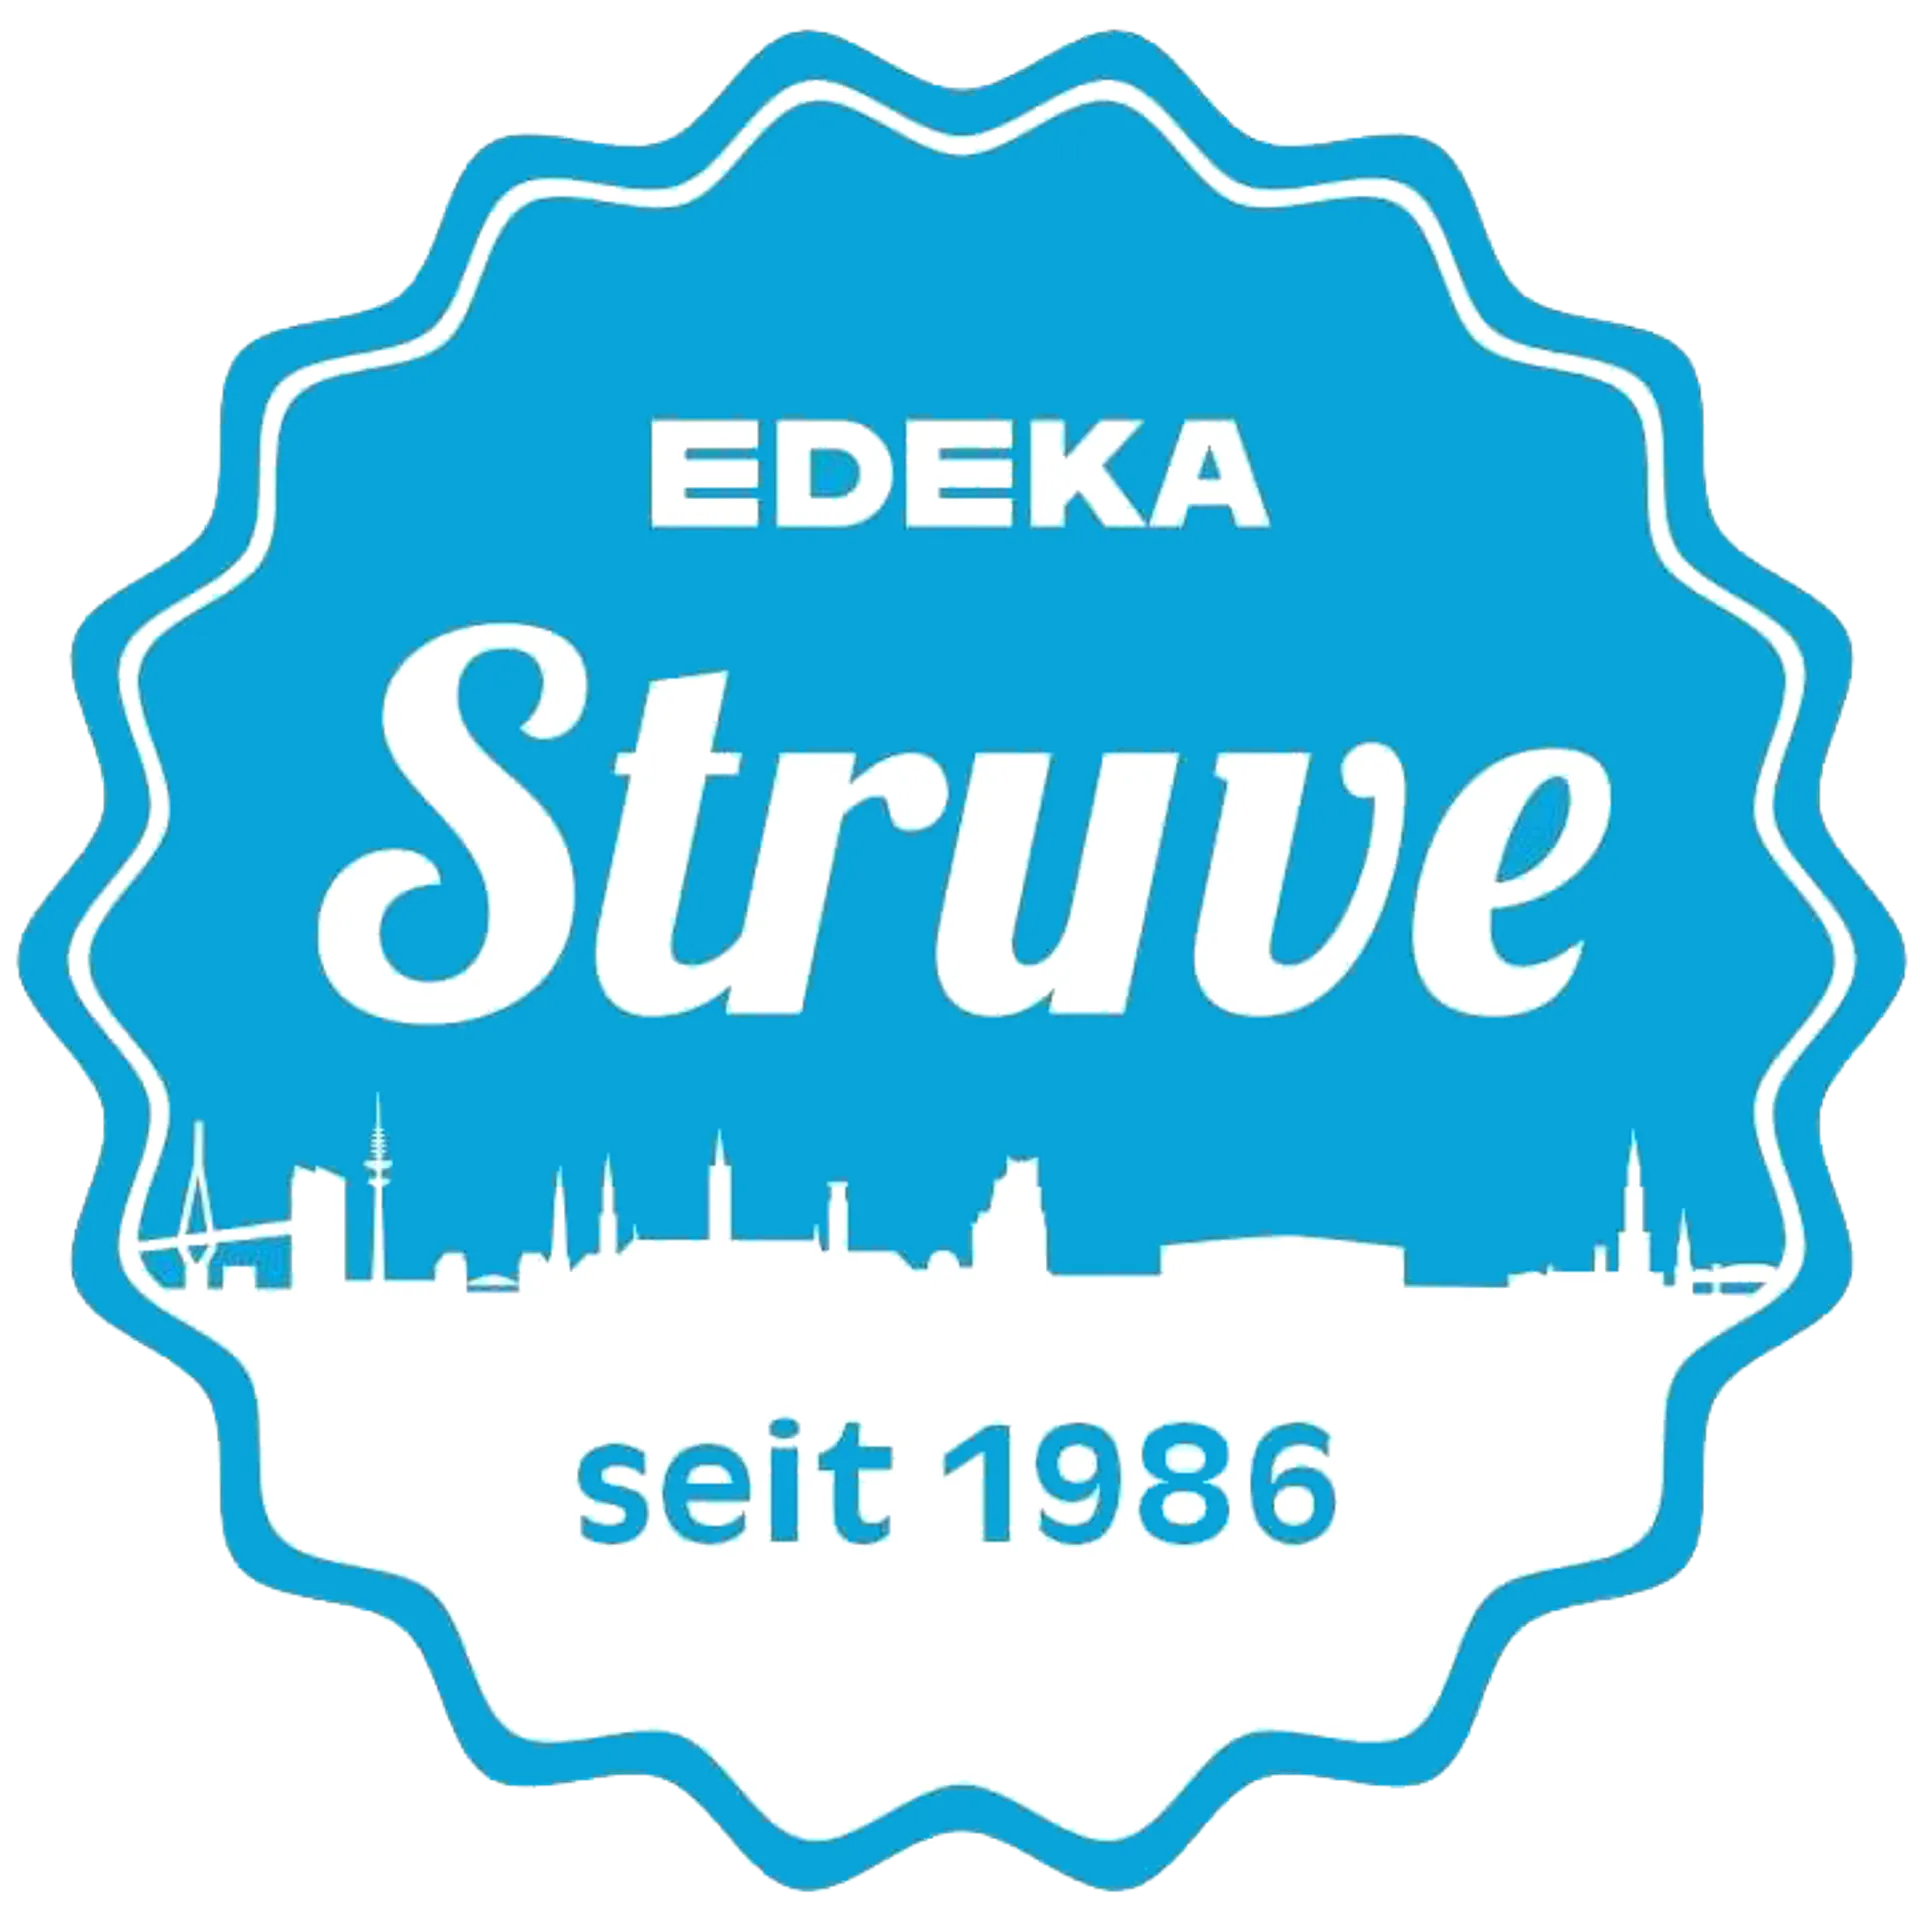 EDEKA STRUVE logo